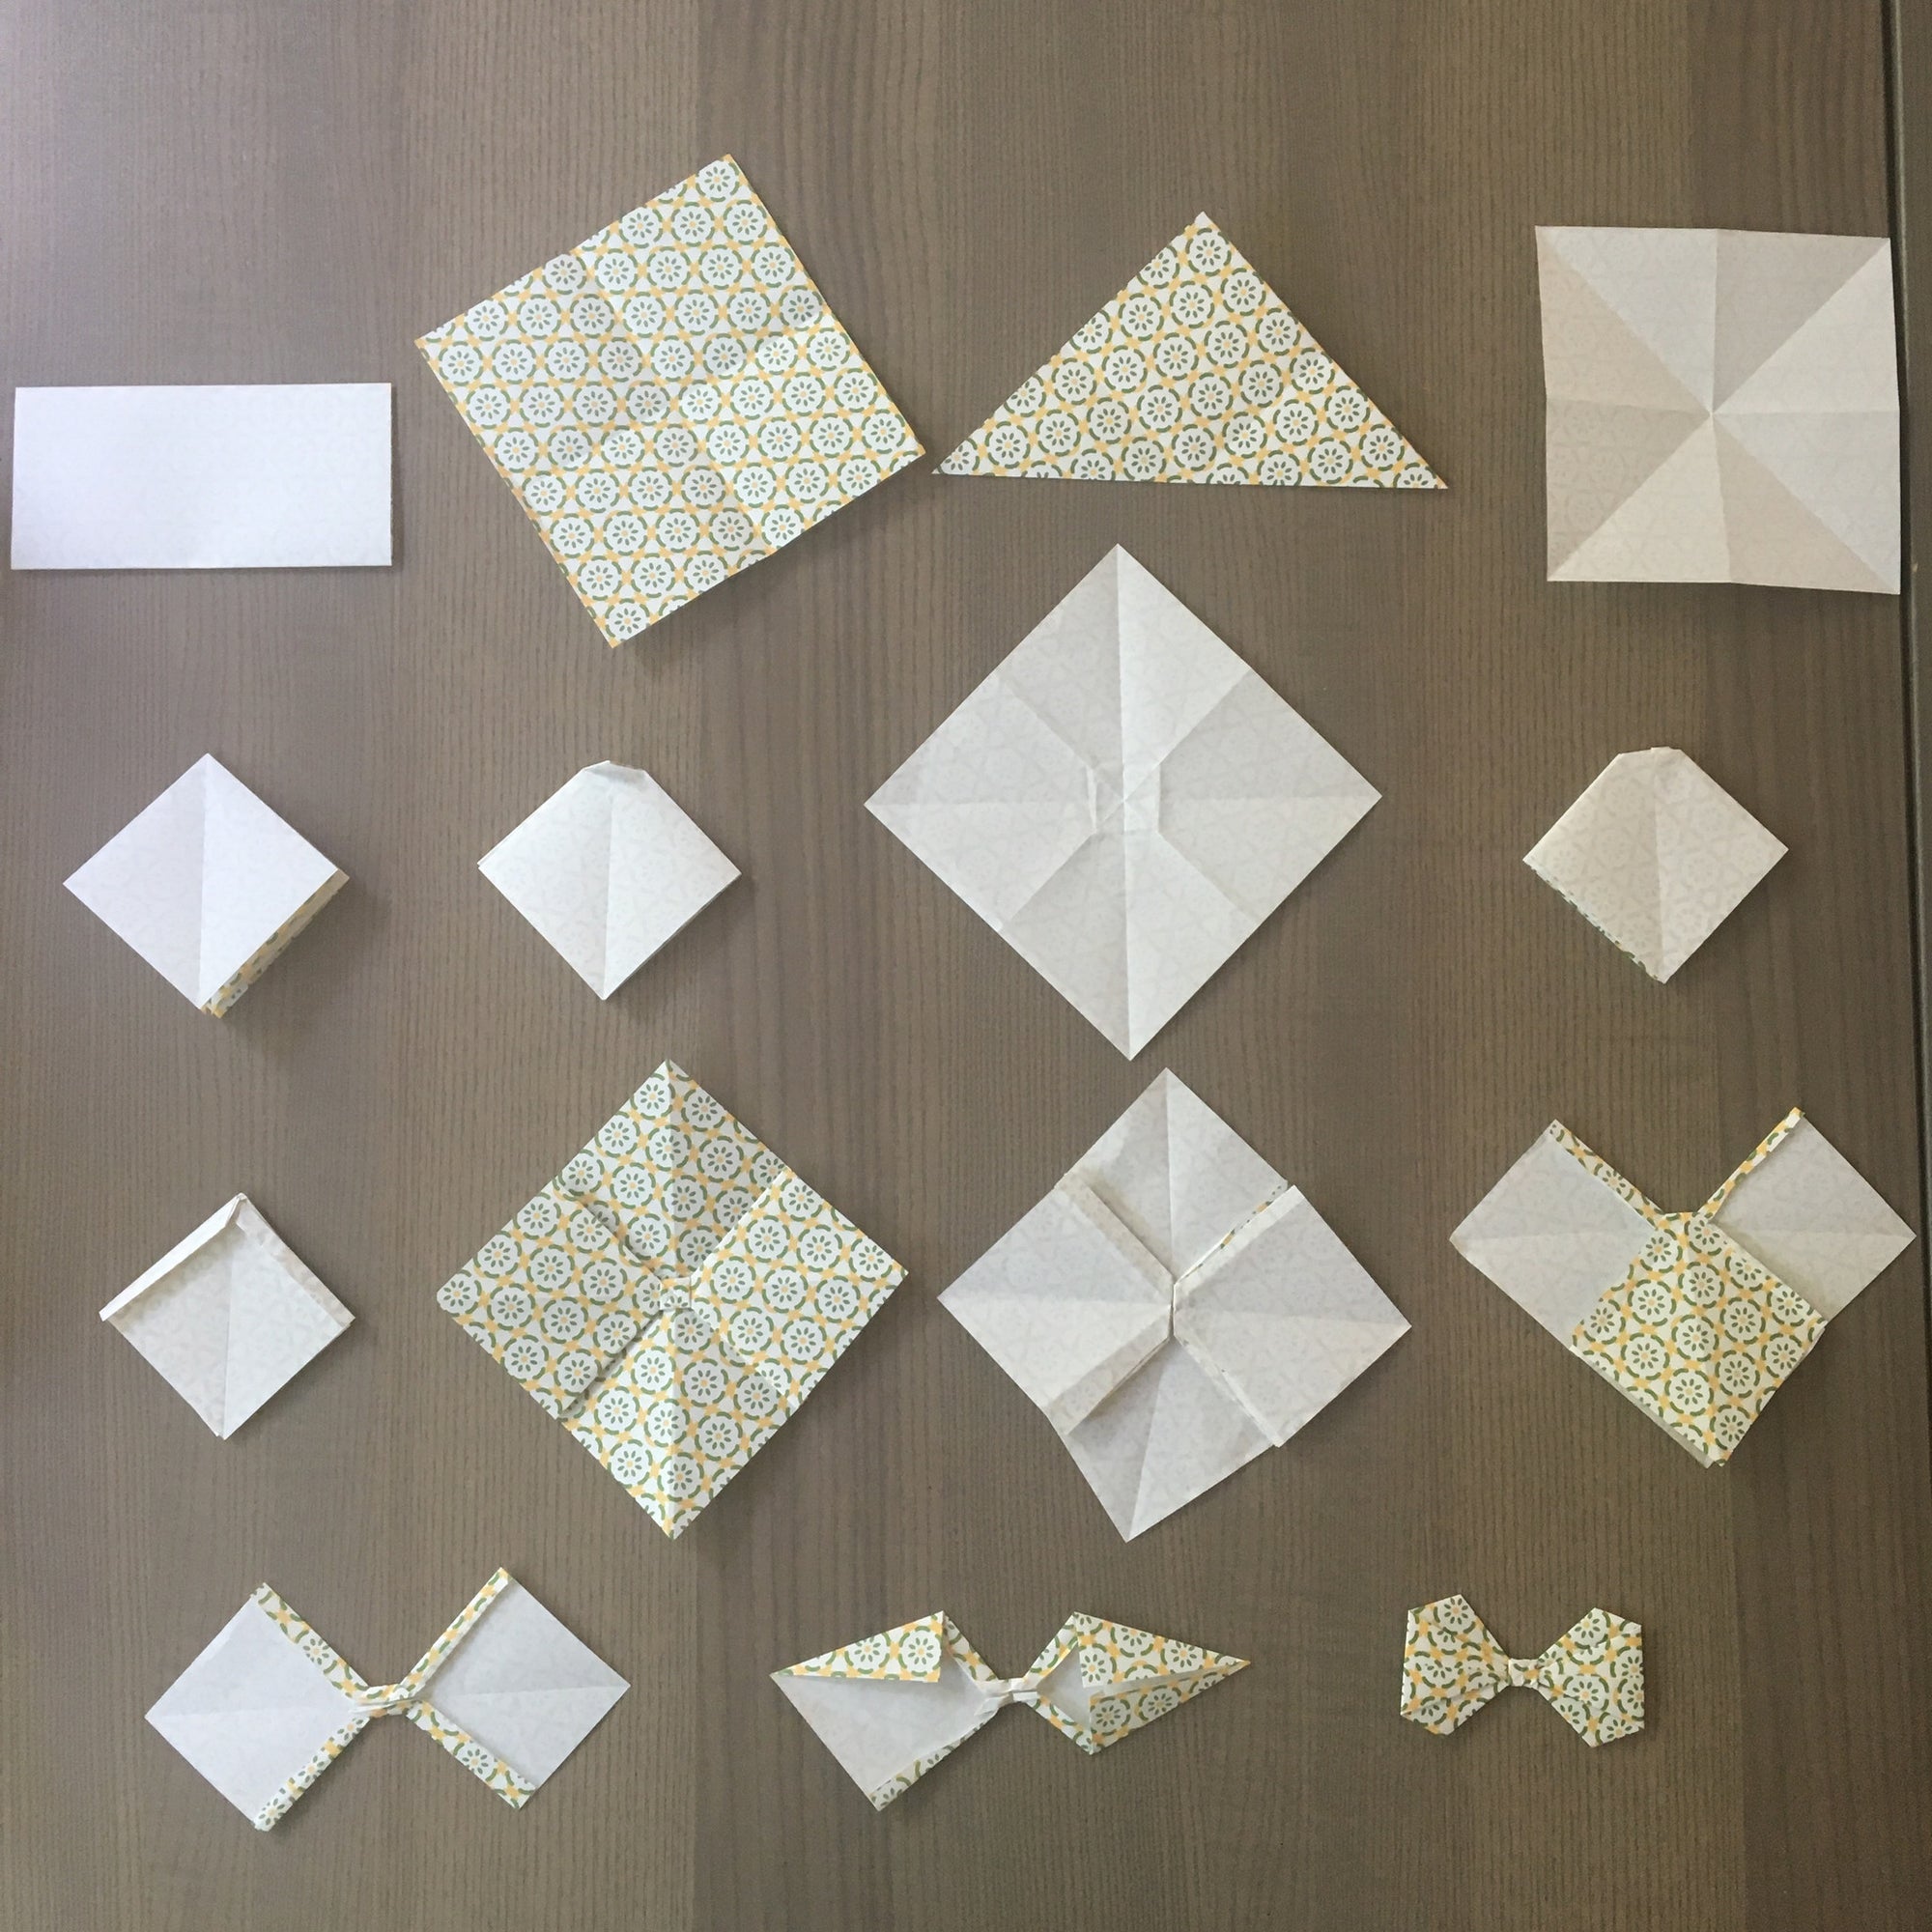 Origami Bowtie Tutorial